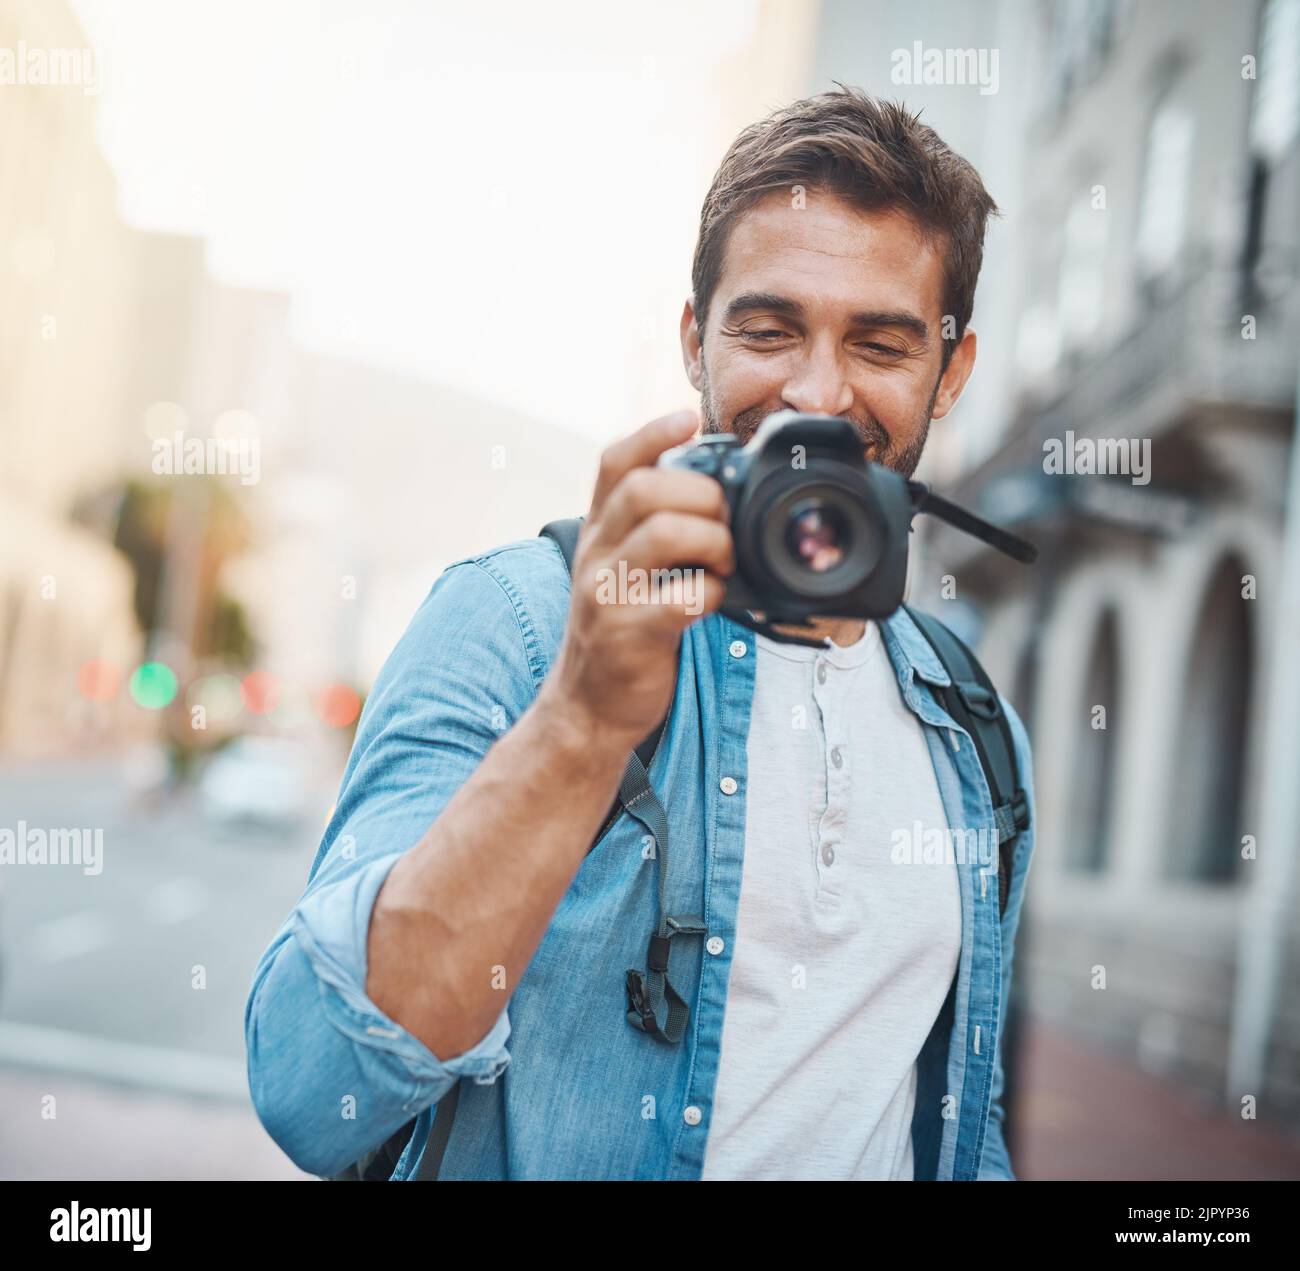 Die Fotografie macht Sie sich Ihrer Umgebung bewusst. Ein junger Mann, der Fotos macht, während er eine fremde Stadt erkundet. Stockfoto